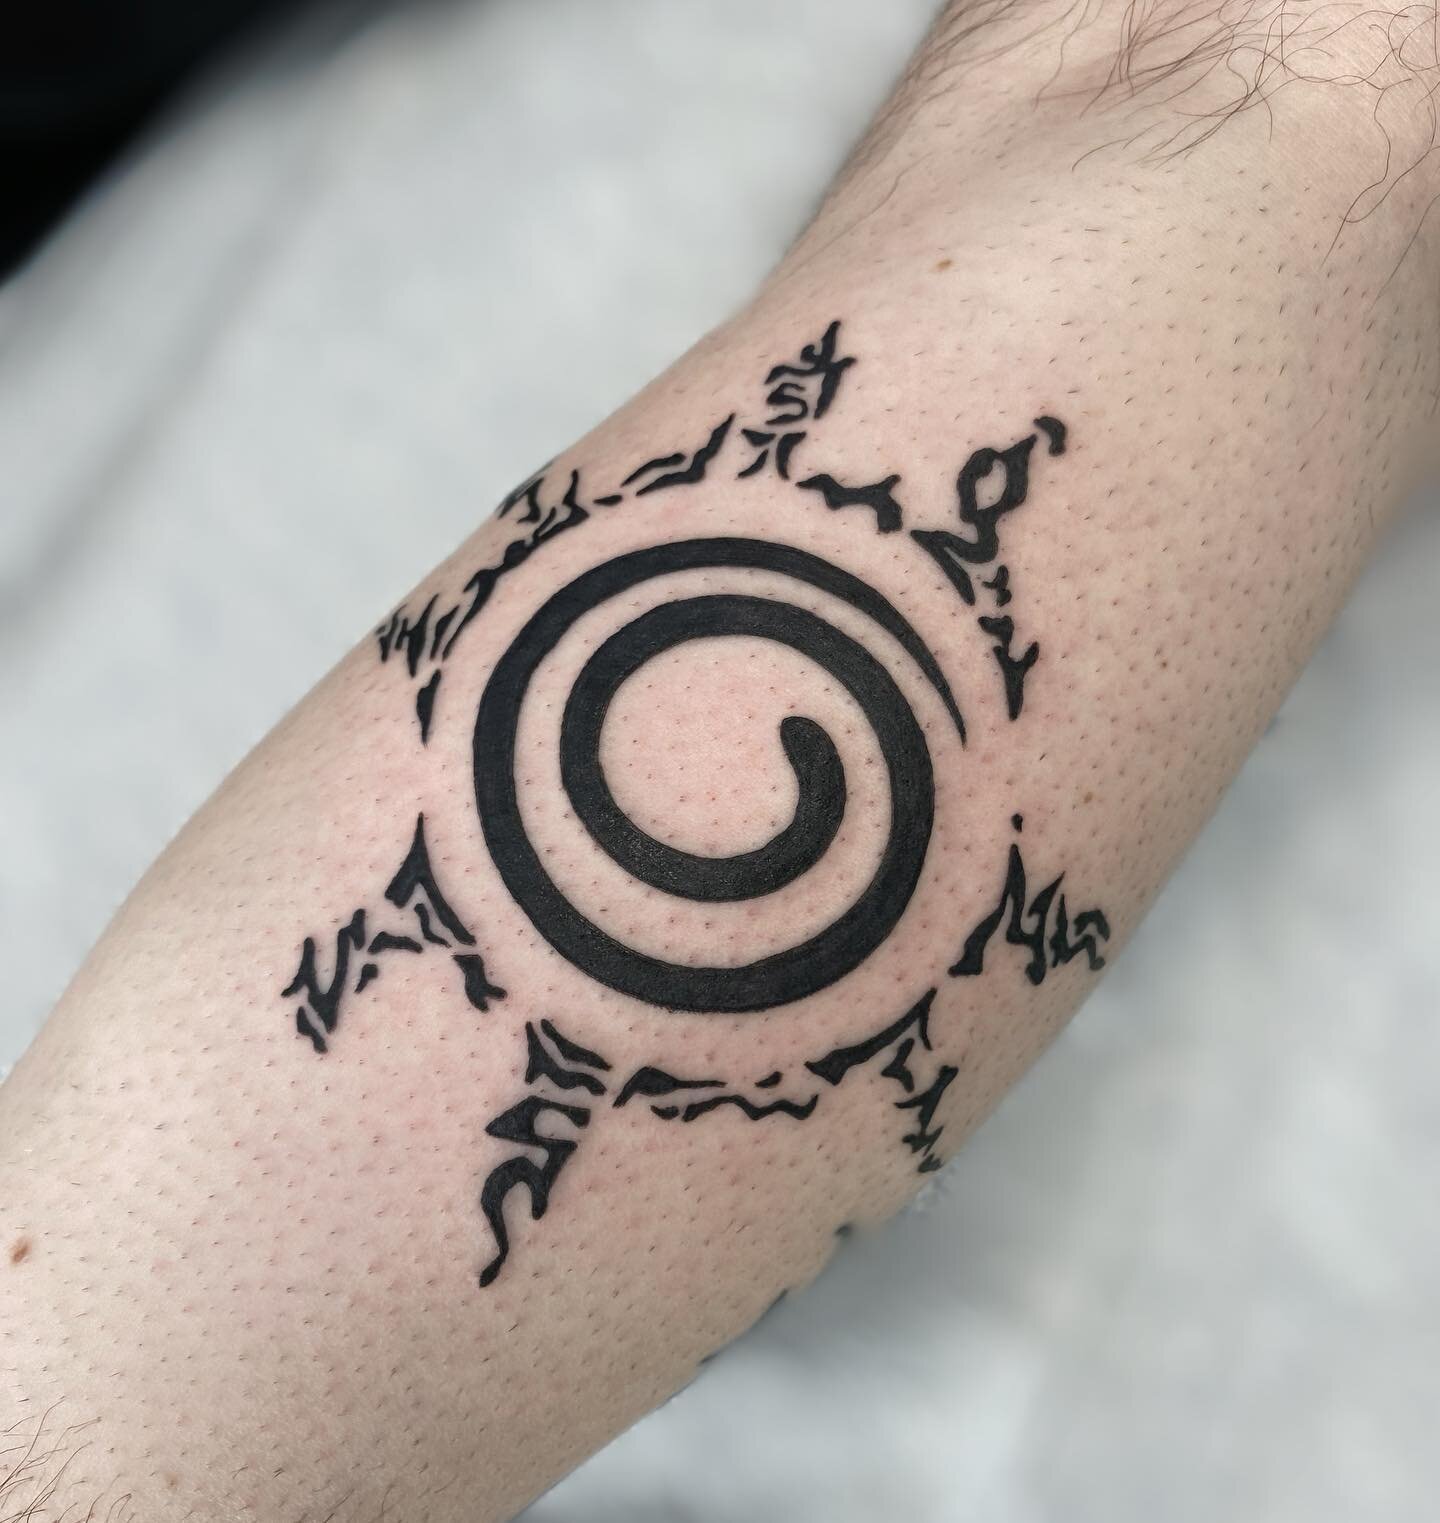 Right trigram seal 🦊

#naruto #anime #animeink #tattoo #qttr #tattooartist